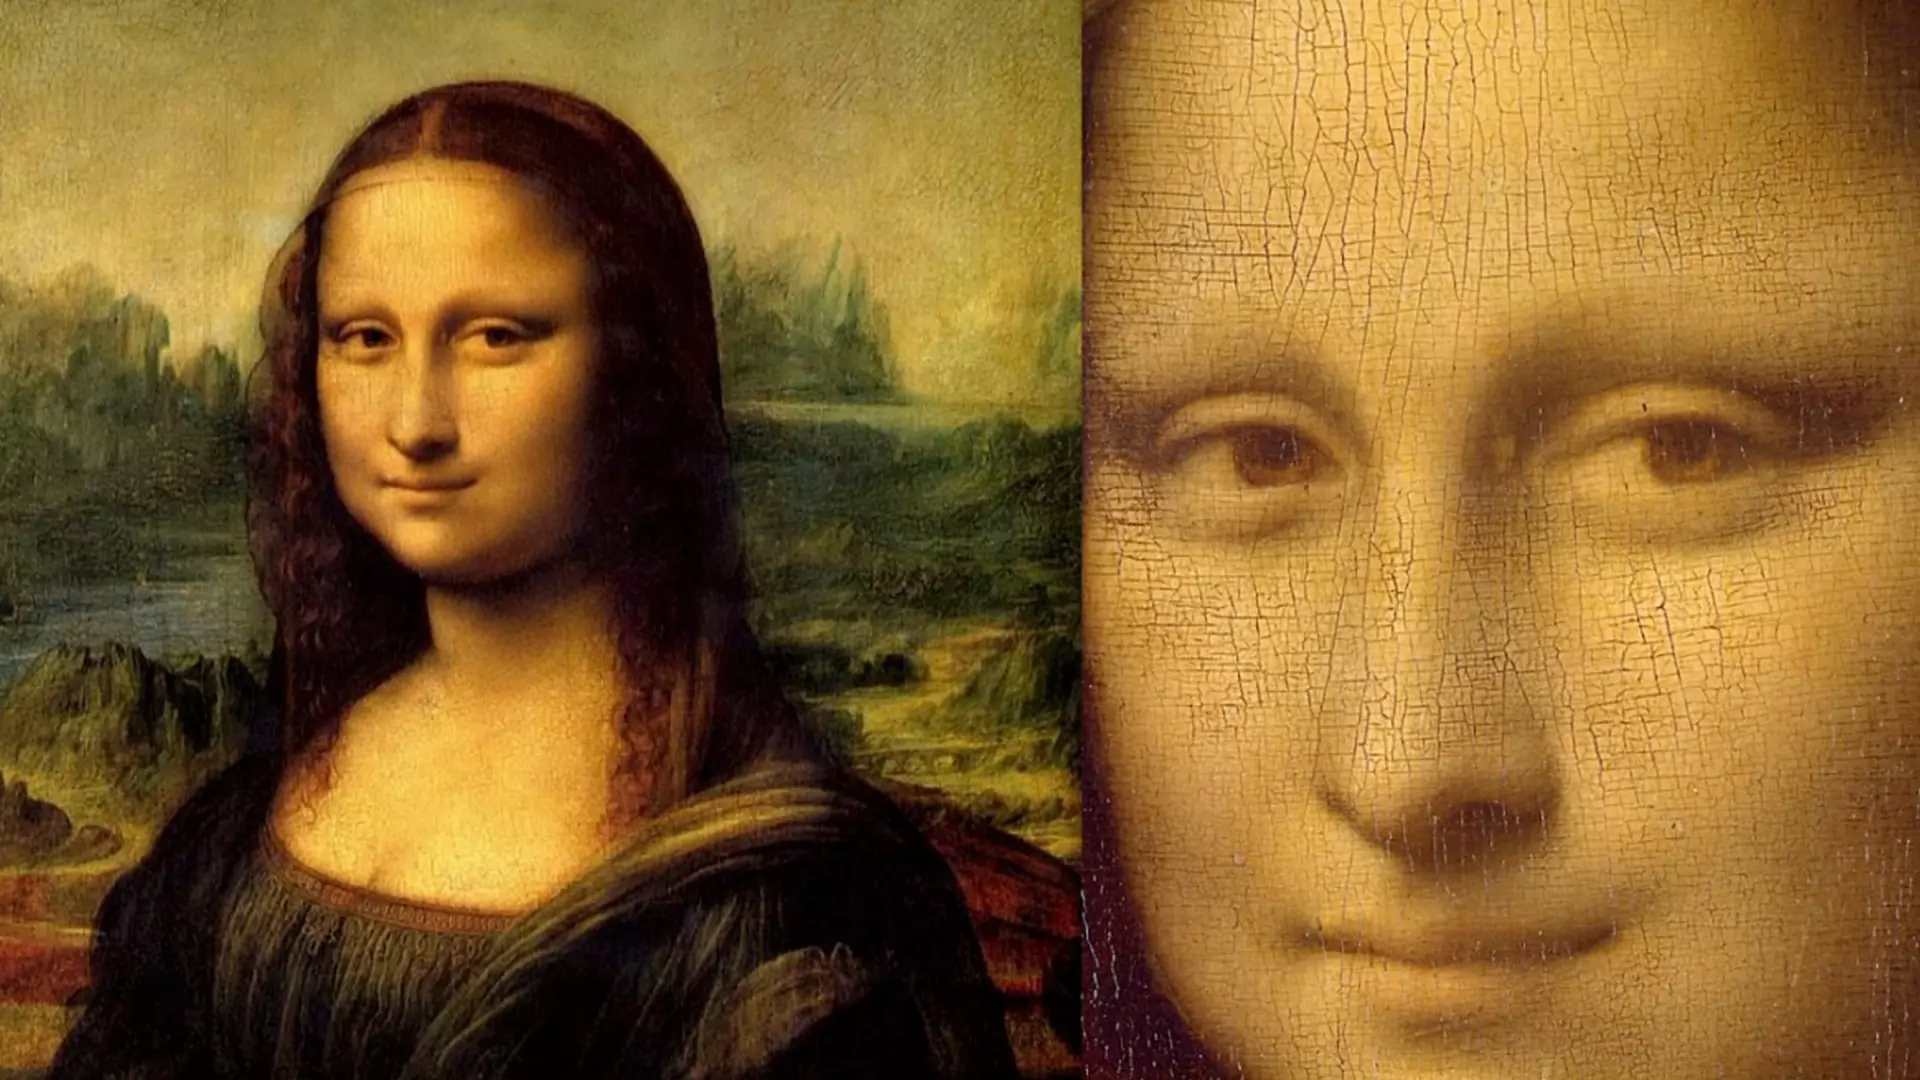 Pod "Mona Lisą" odkryto naszkicowany rysunek. Badanie obrazu trwało 15 lat